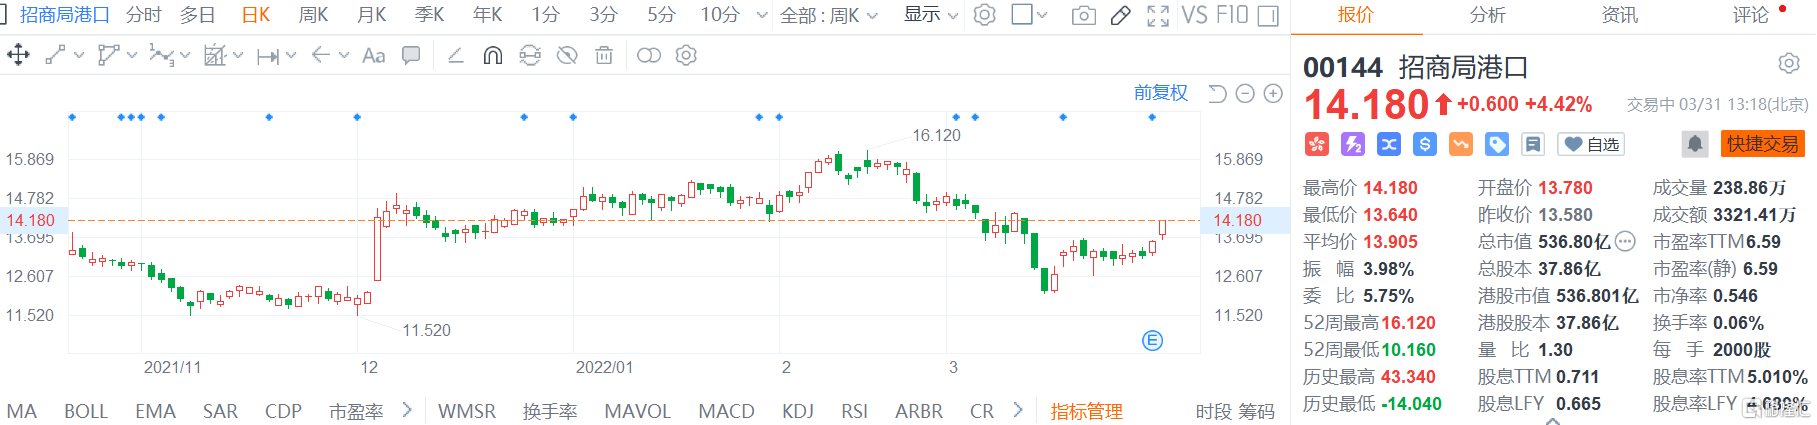 招商局港口(0144.HK)股价继续回升 现报14.18港元涨幅4.4%